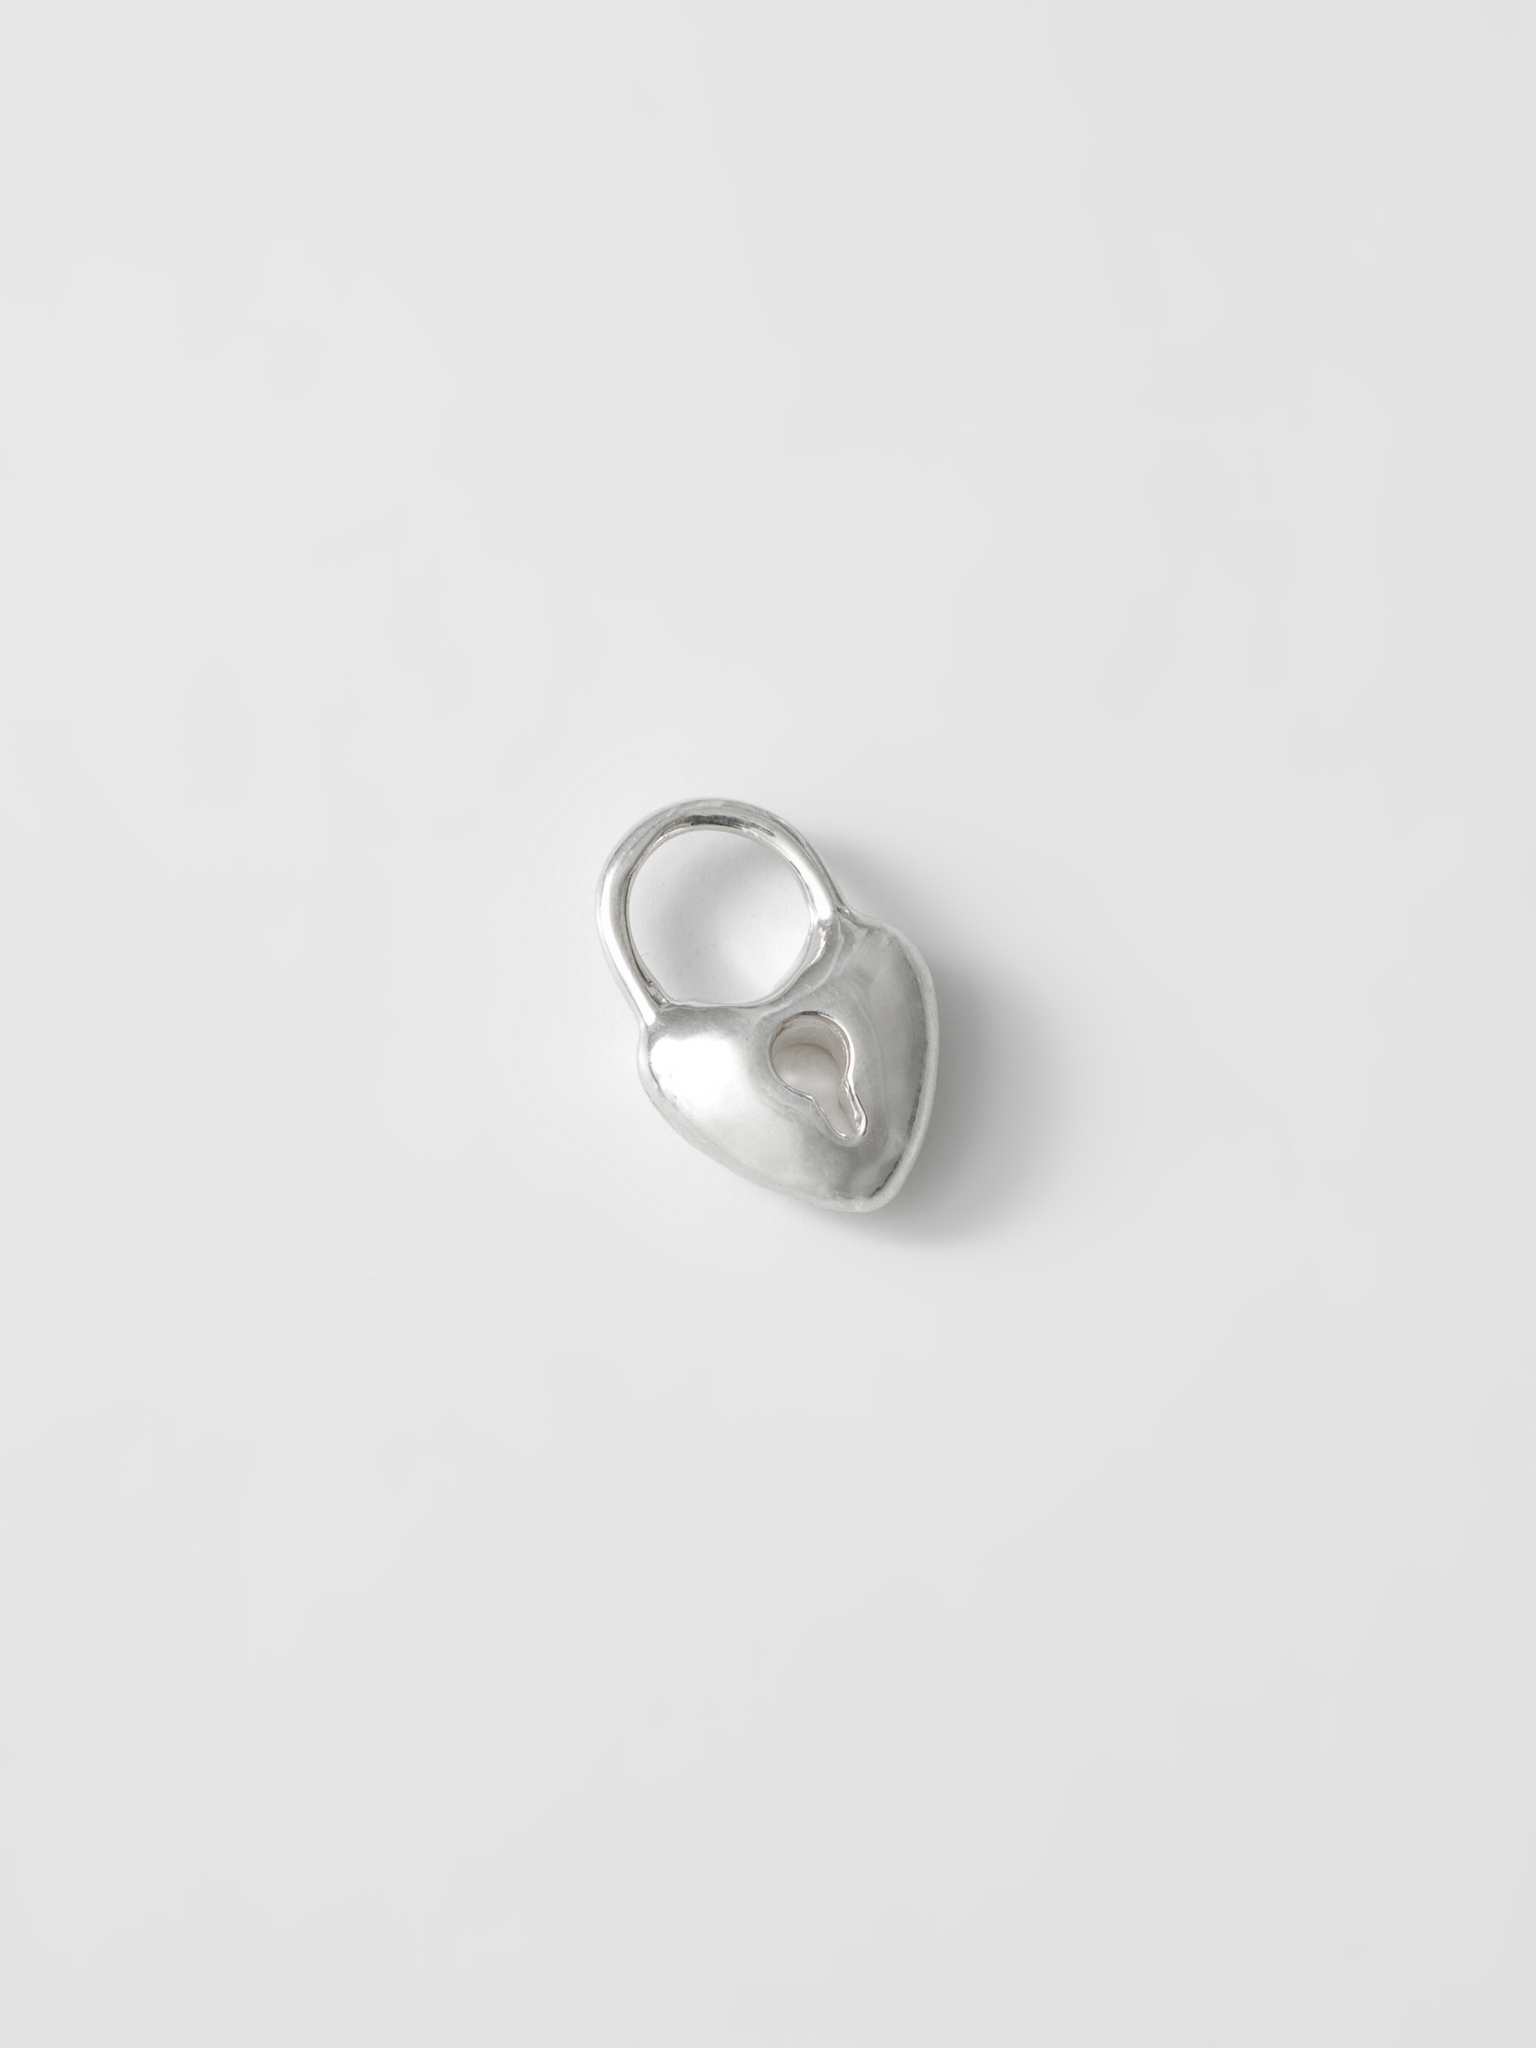 Mini Heart Lock Charm in Sterling Silver